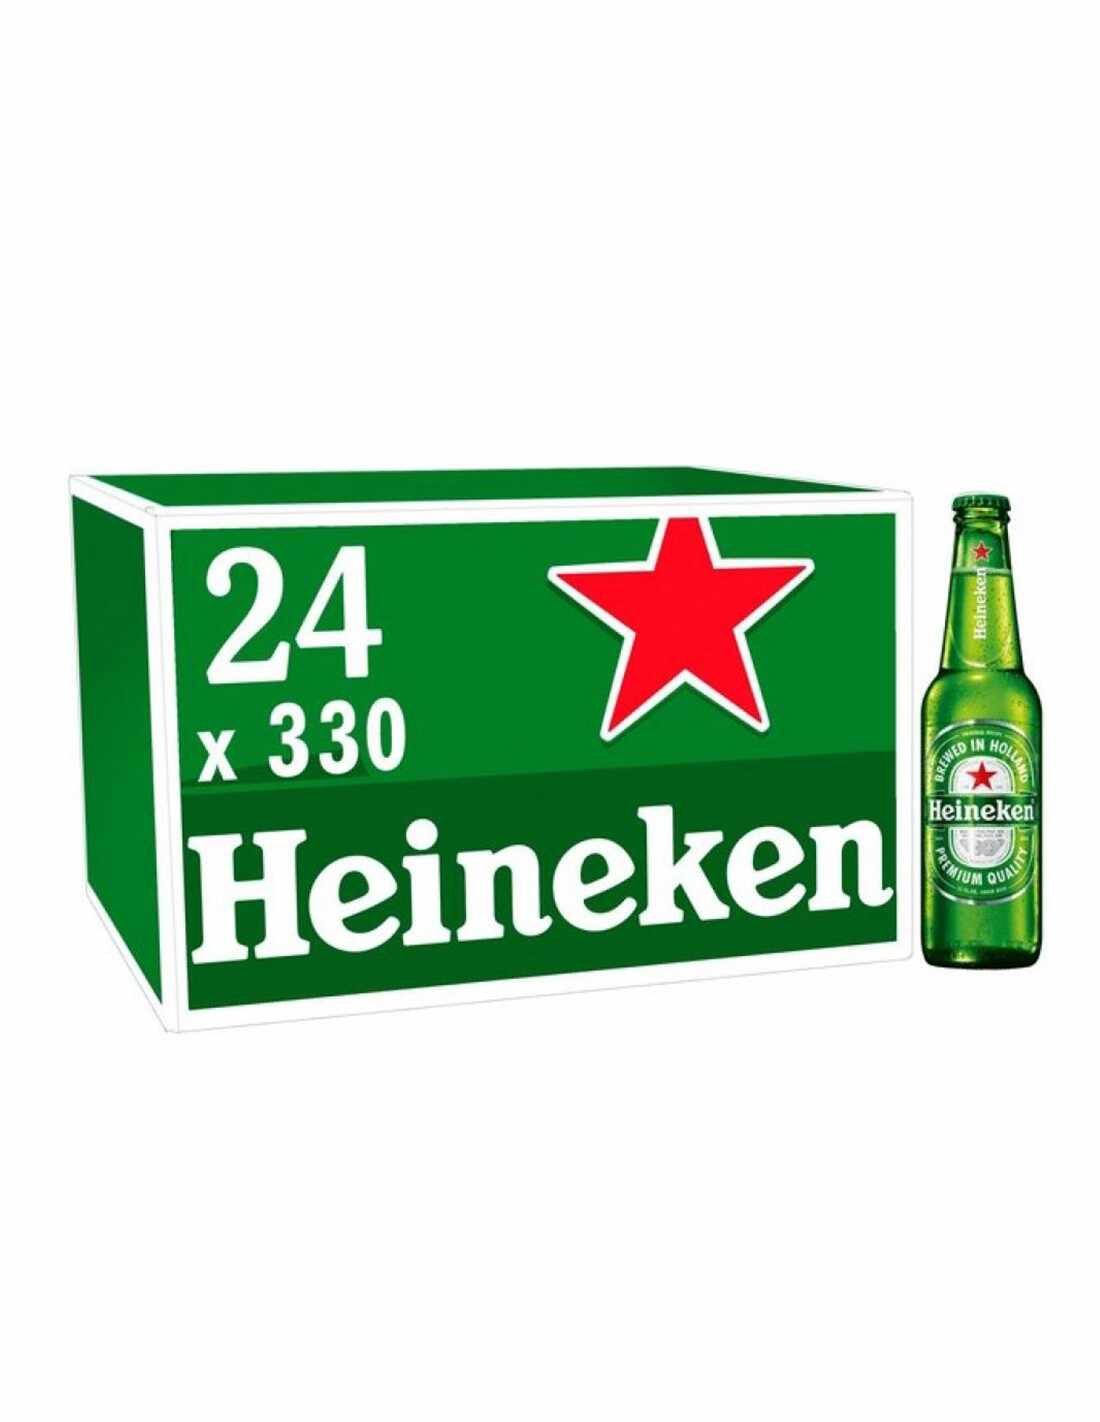 Bax 24 bucati bere blonda, filtrata, Heineken, 5% alc., 0.33L, sticla, Romania